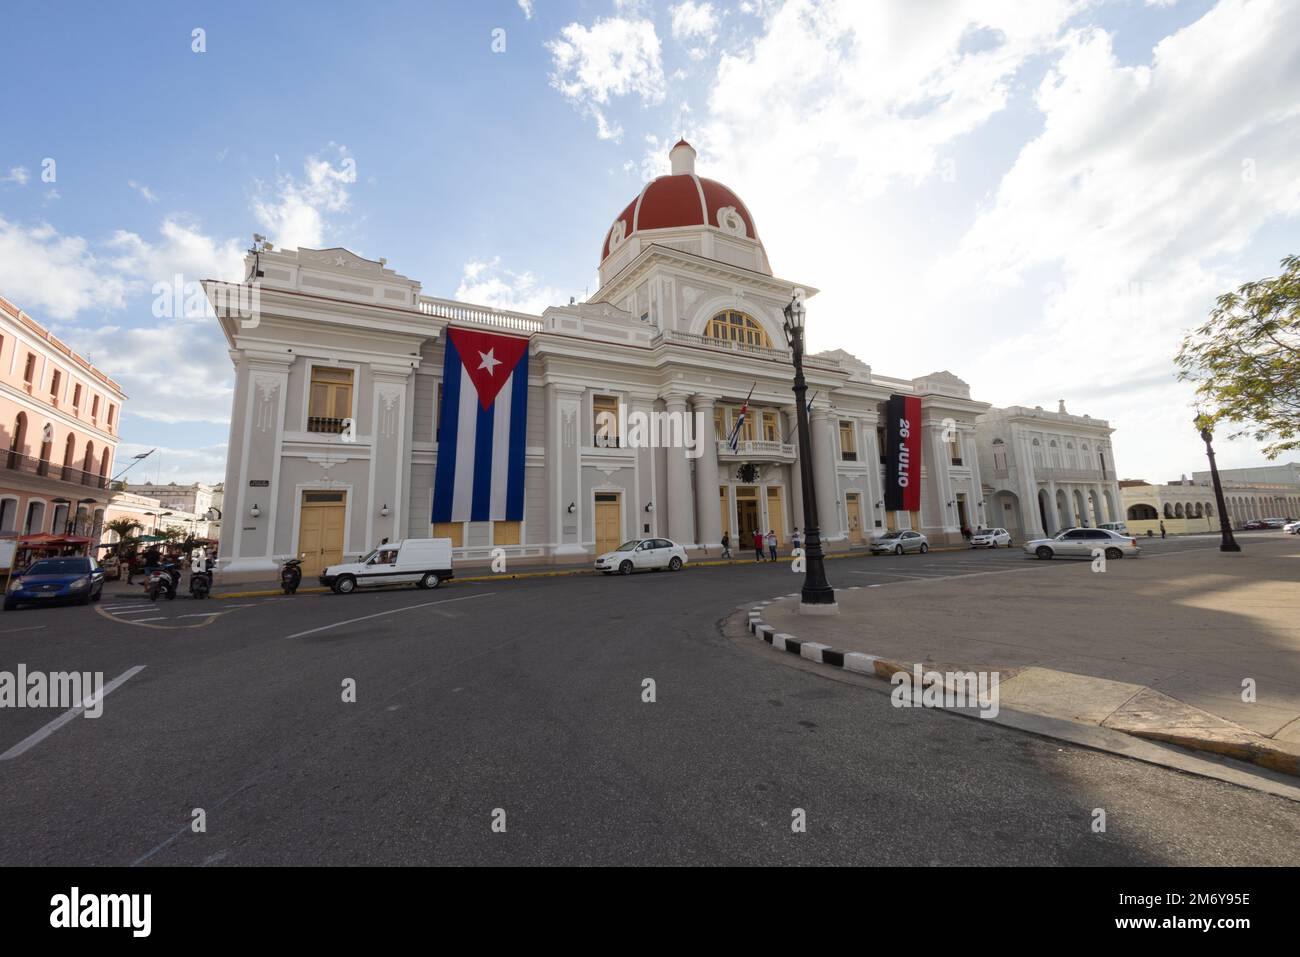 Palacio de Gobierno, Government Palace on Plaza de Armas, Cienfuegos, Cuba Stock Photo